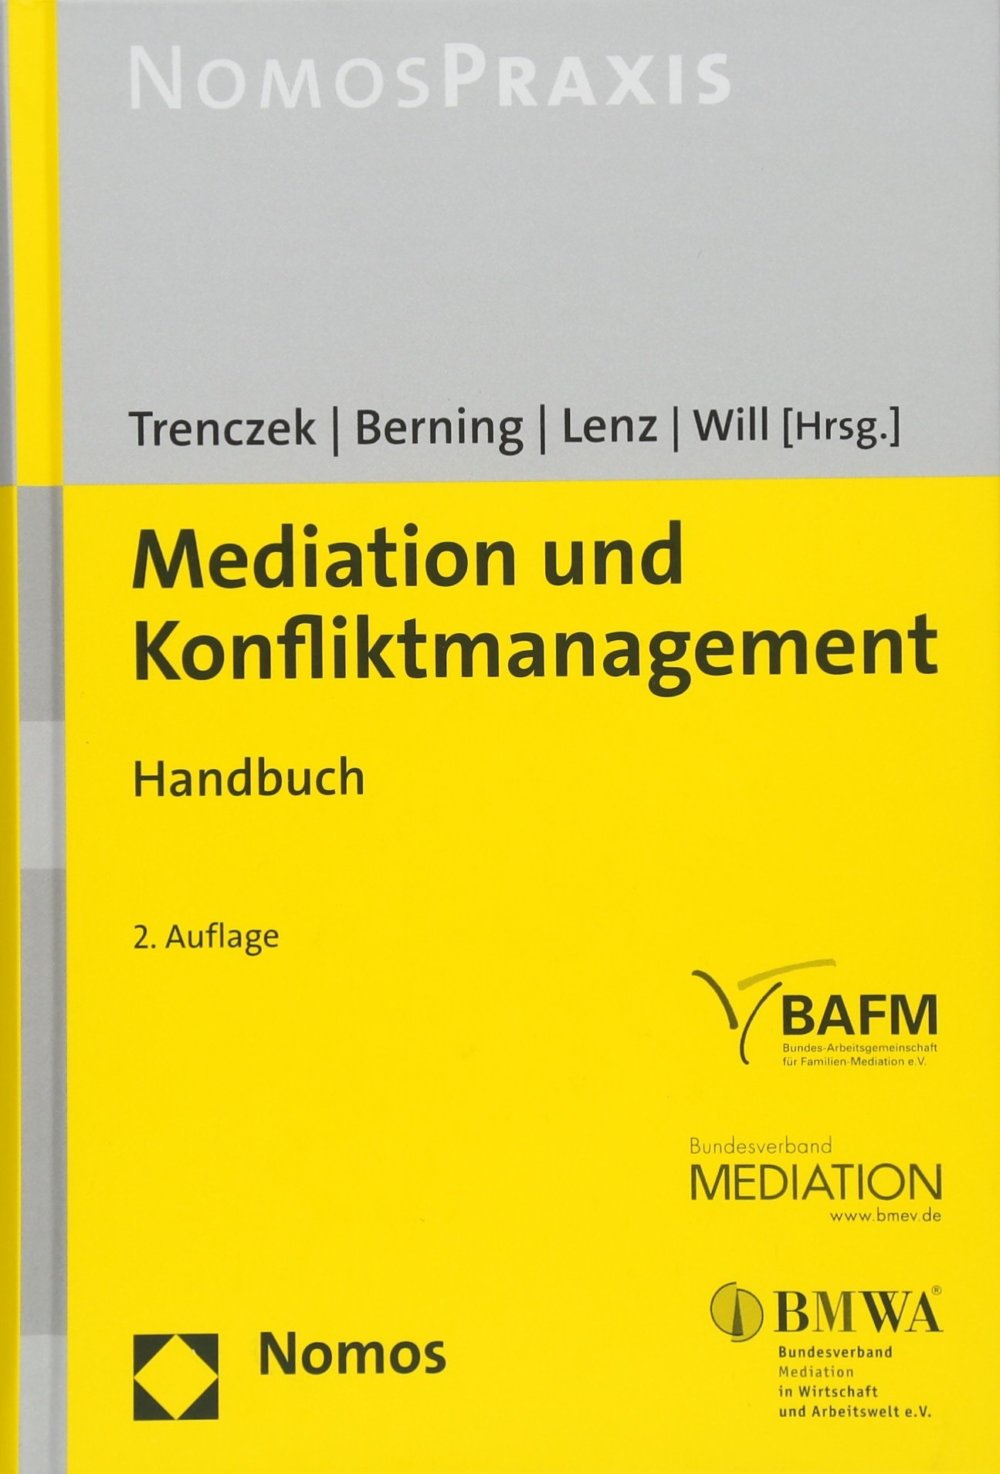 Handbuch Mediation und Konfliktmanagement (Amazon)